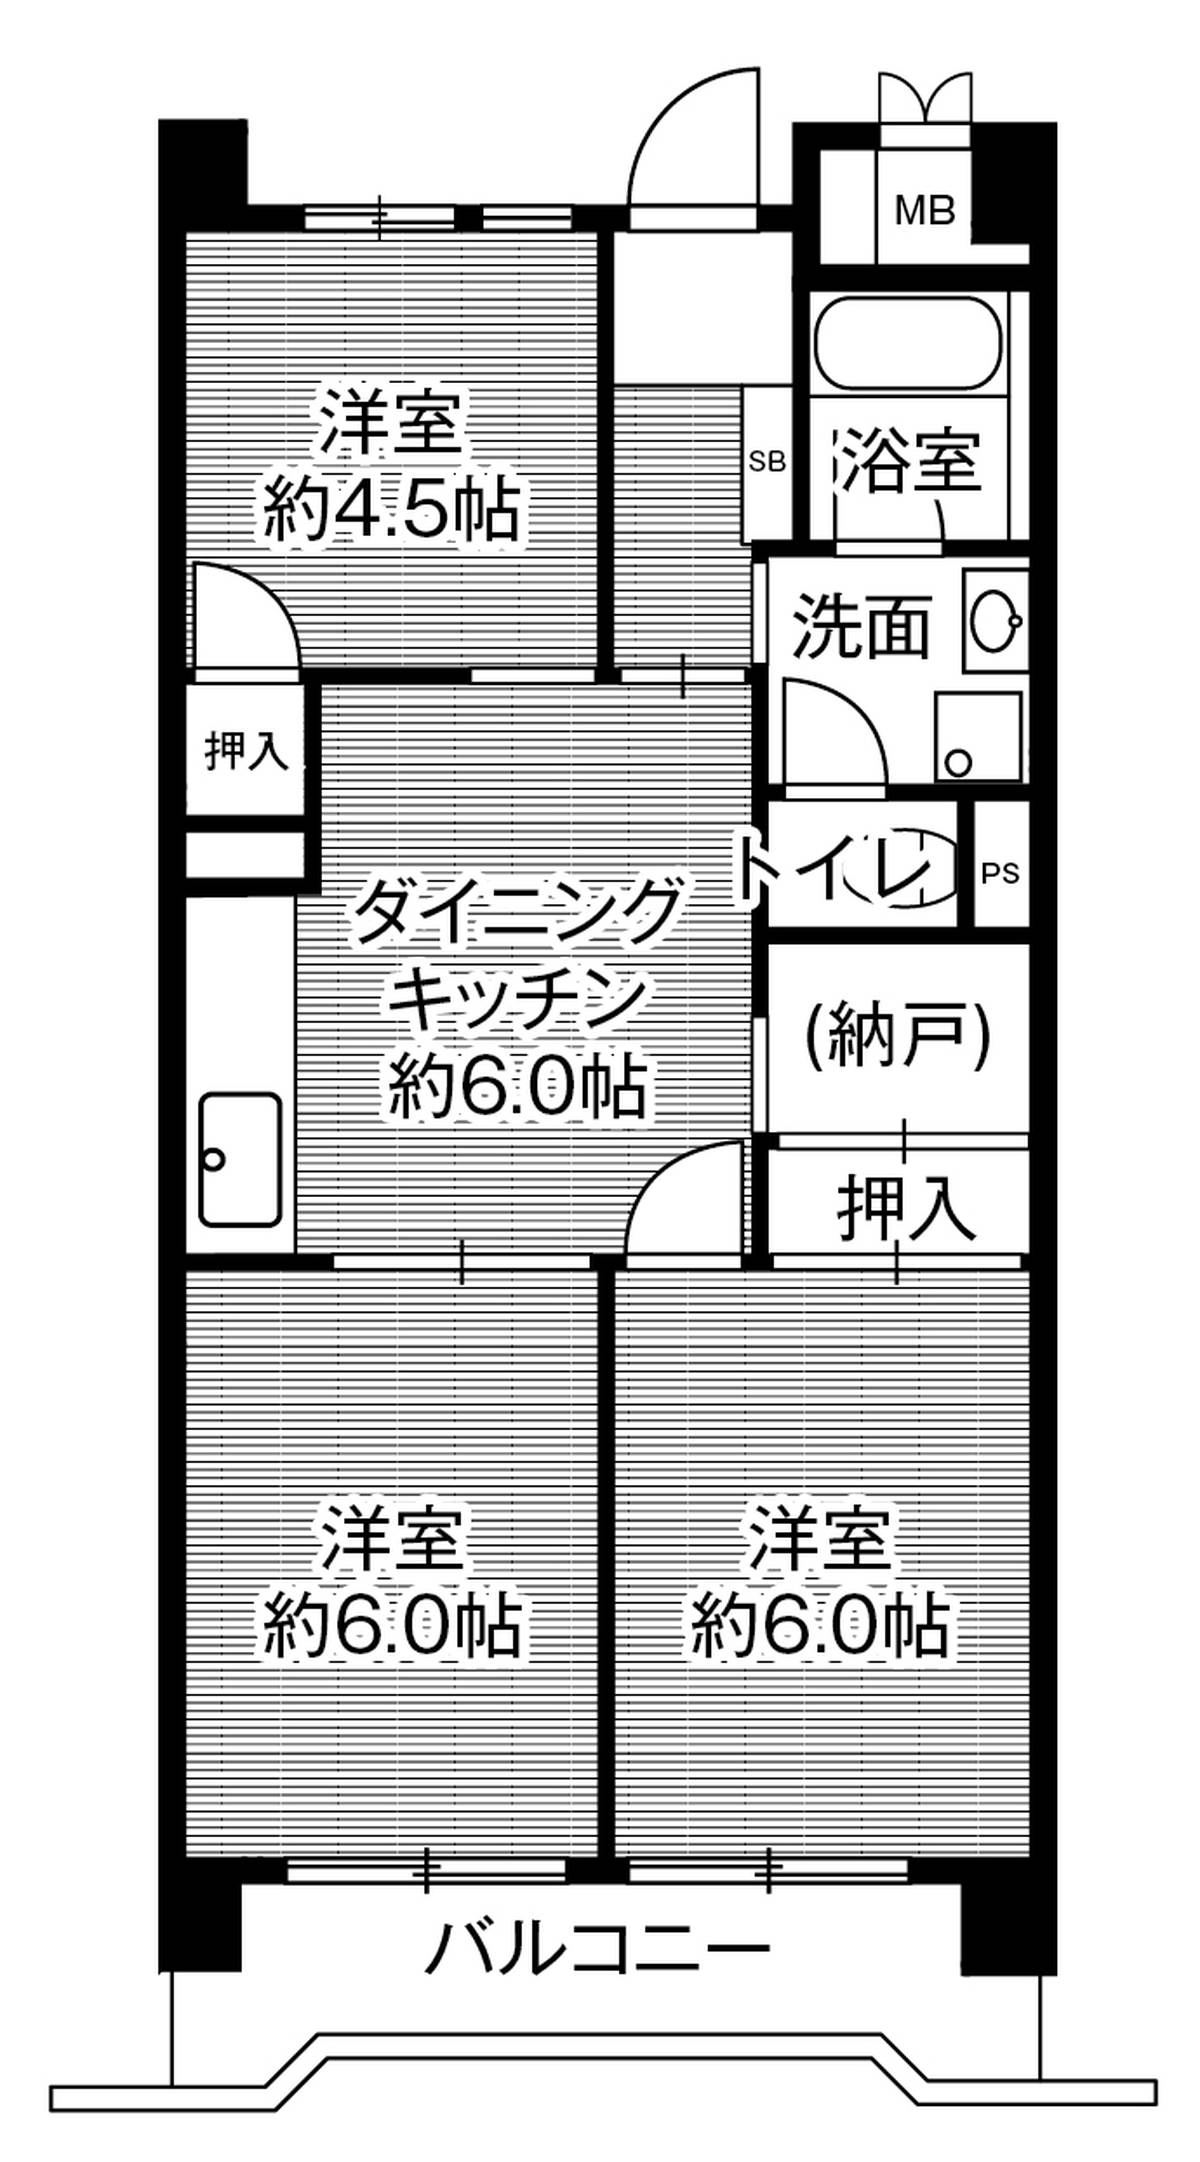 Sơ đồ phòng 3DK của Village House Minatojima Tower ở Chuo-ku